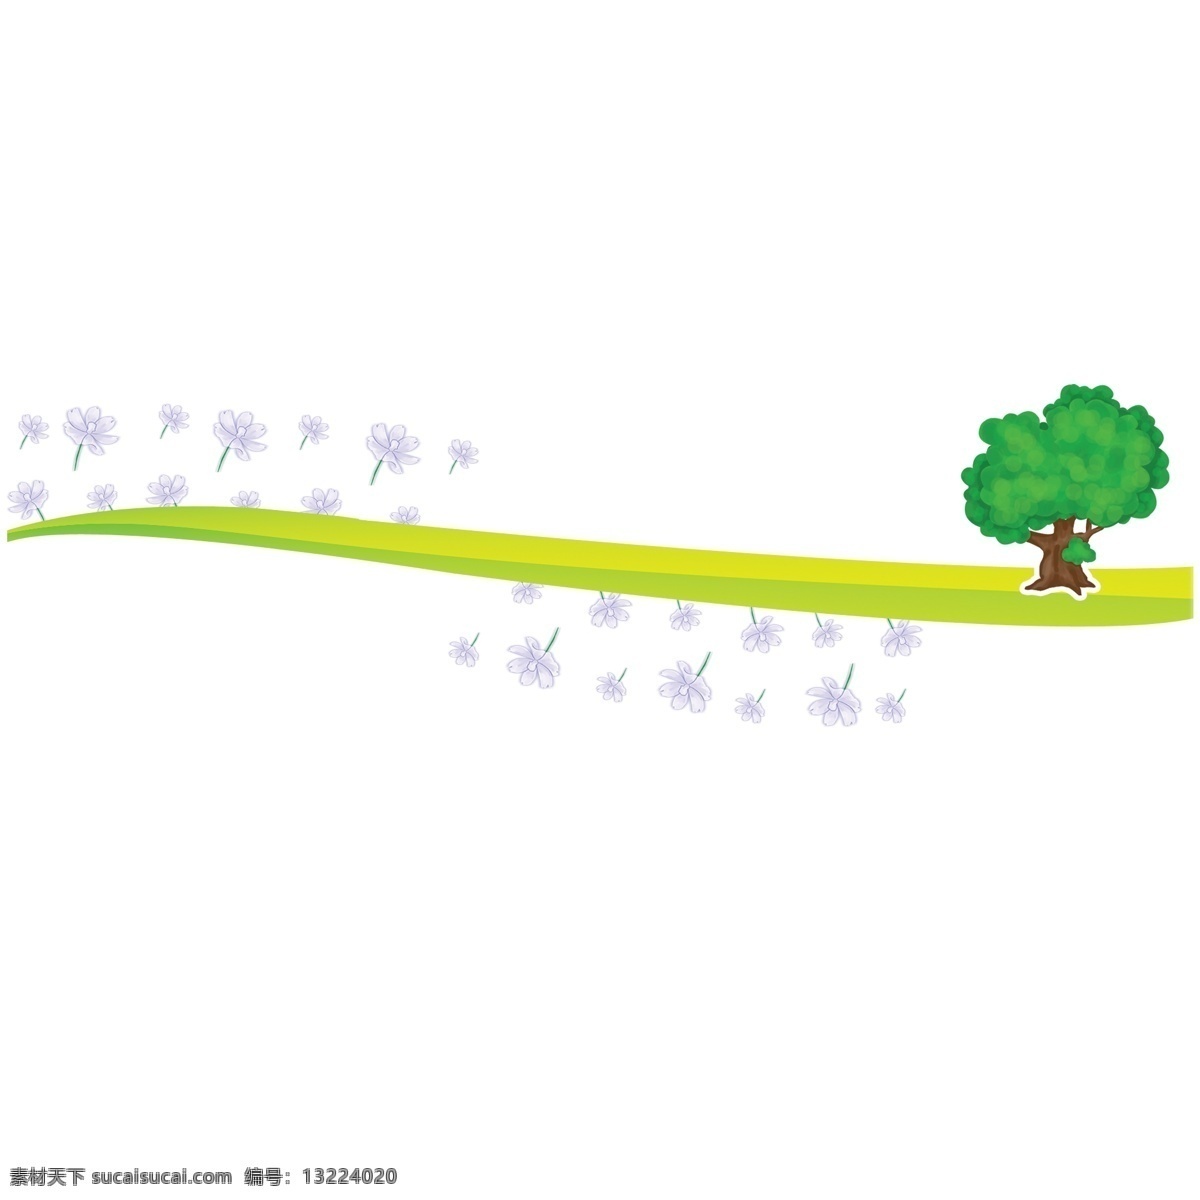 草坪 分割线 卡通 插画 高大的树木 分割线插画 卡通插画 简易分割线 草坪分割线 树苗 树木